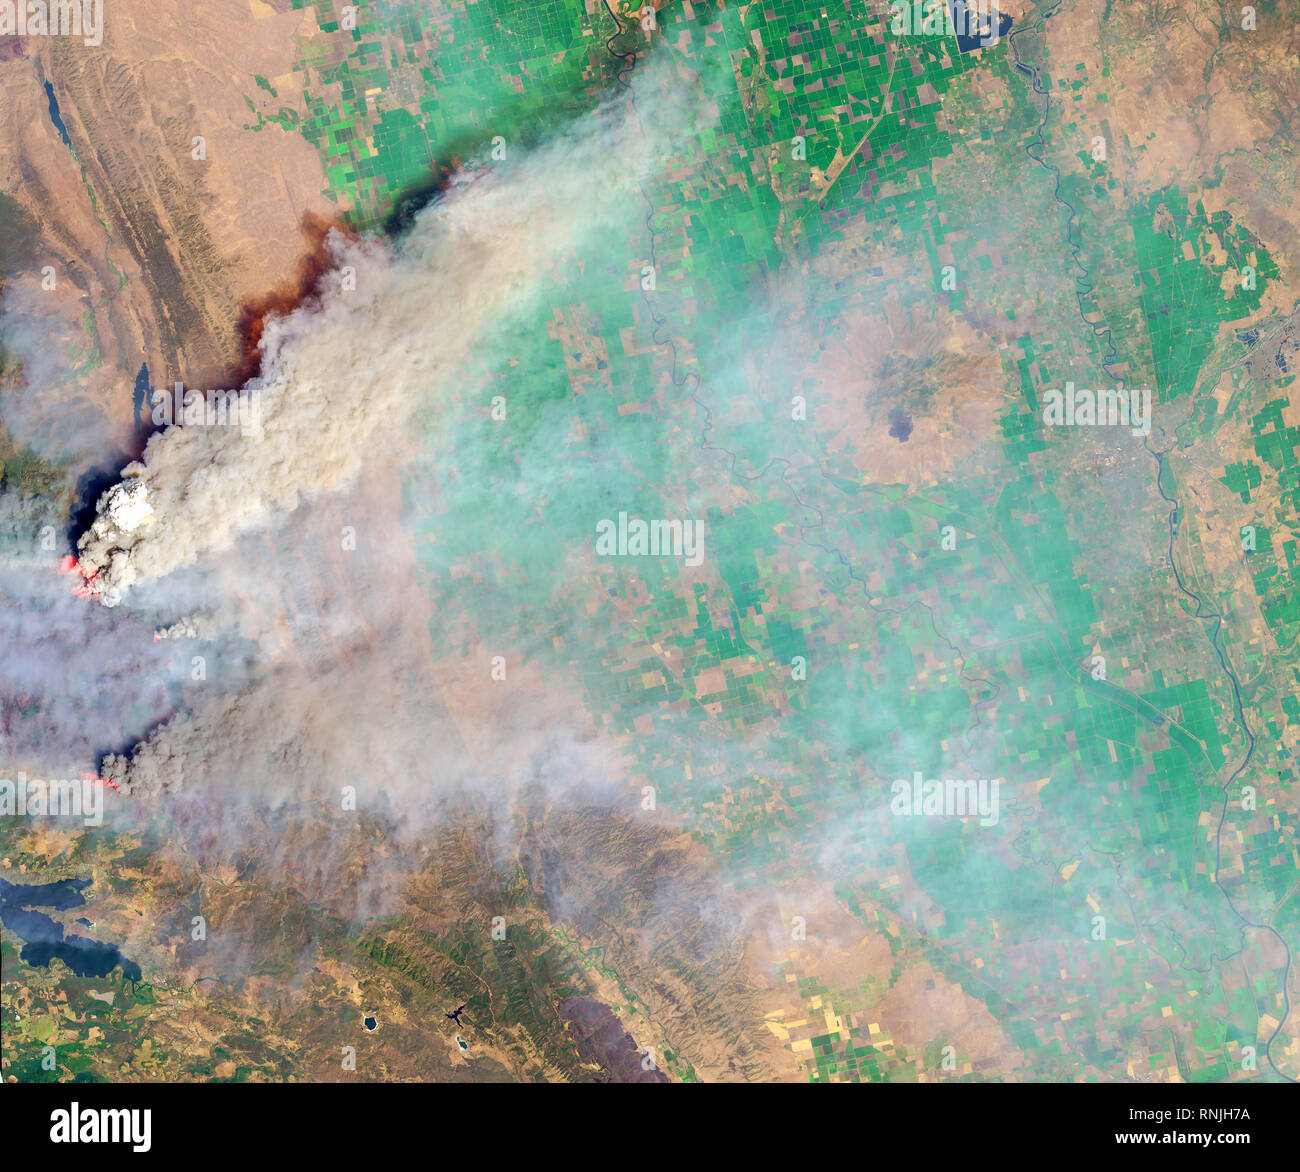 Il 6 agosto 2018, la terra operative imager (OLI) sul satellite Landsat 8 cattura un'immagine (in alto) di una densa colonna di fumo sormontato da un cloud pyrocumulus uovere Foto Stock